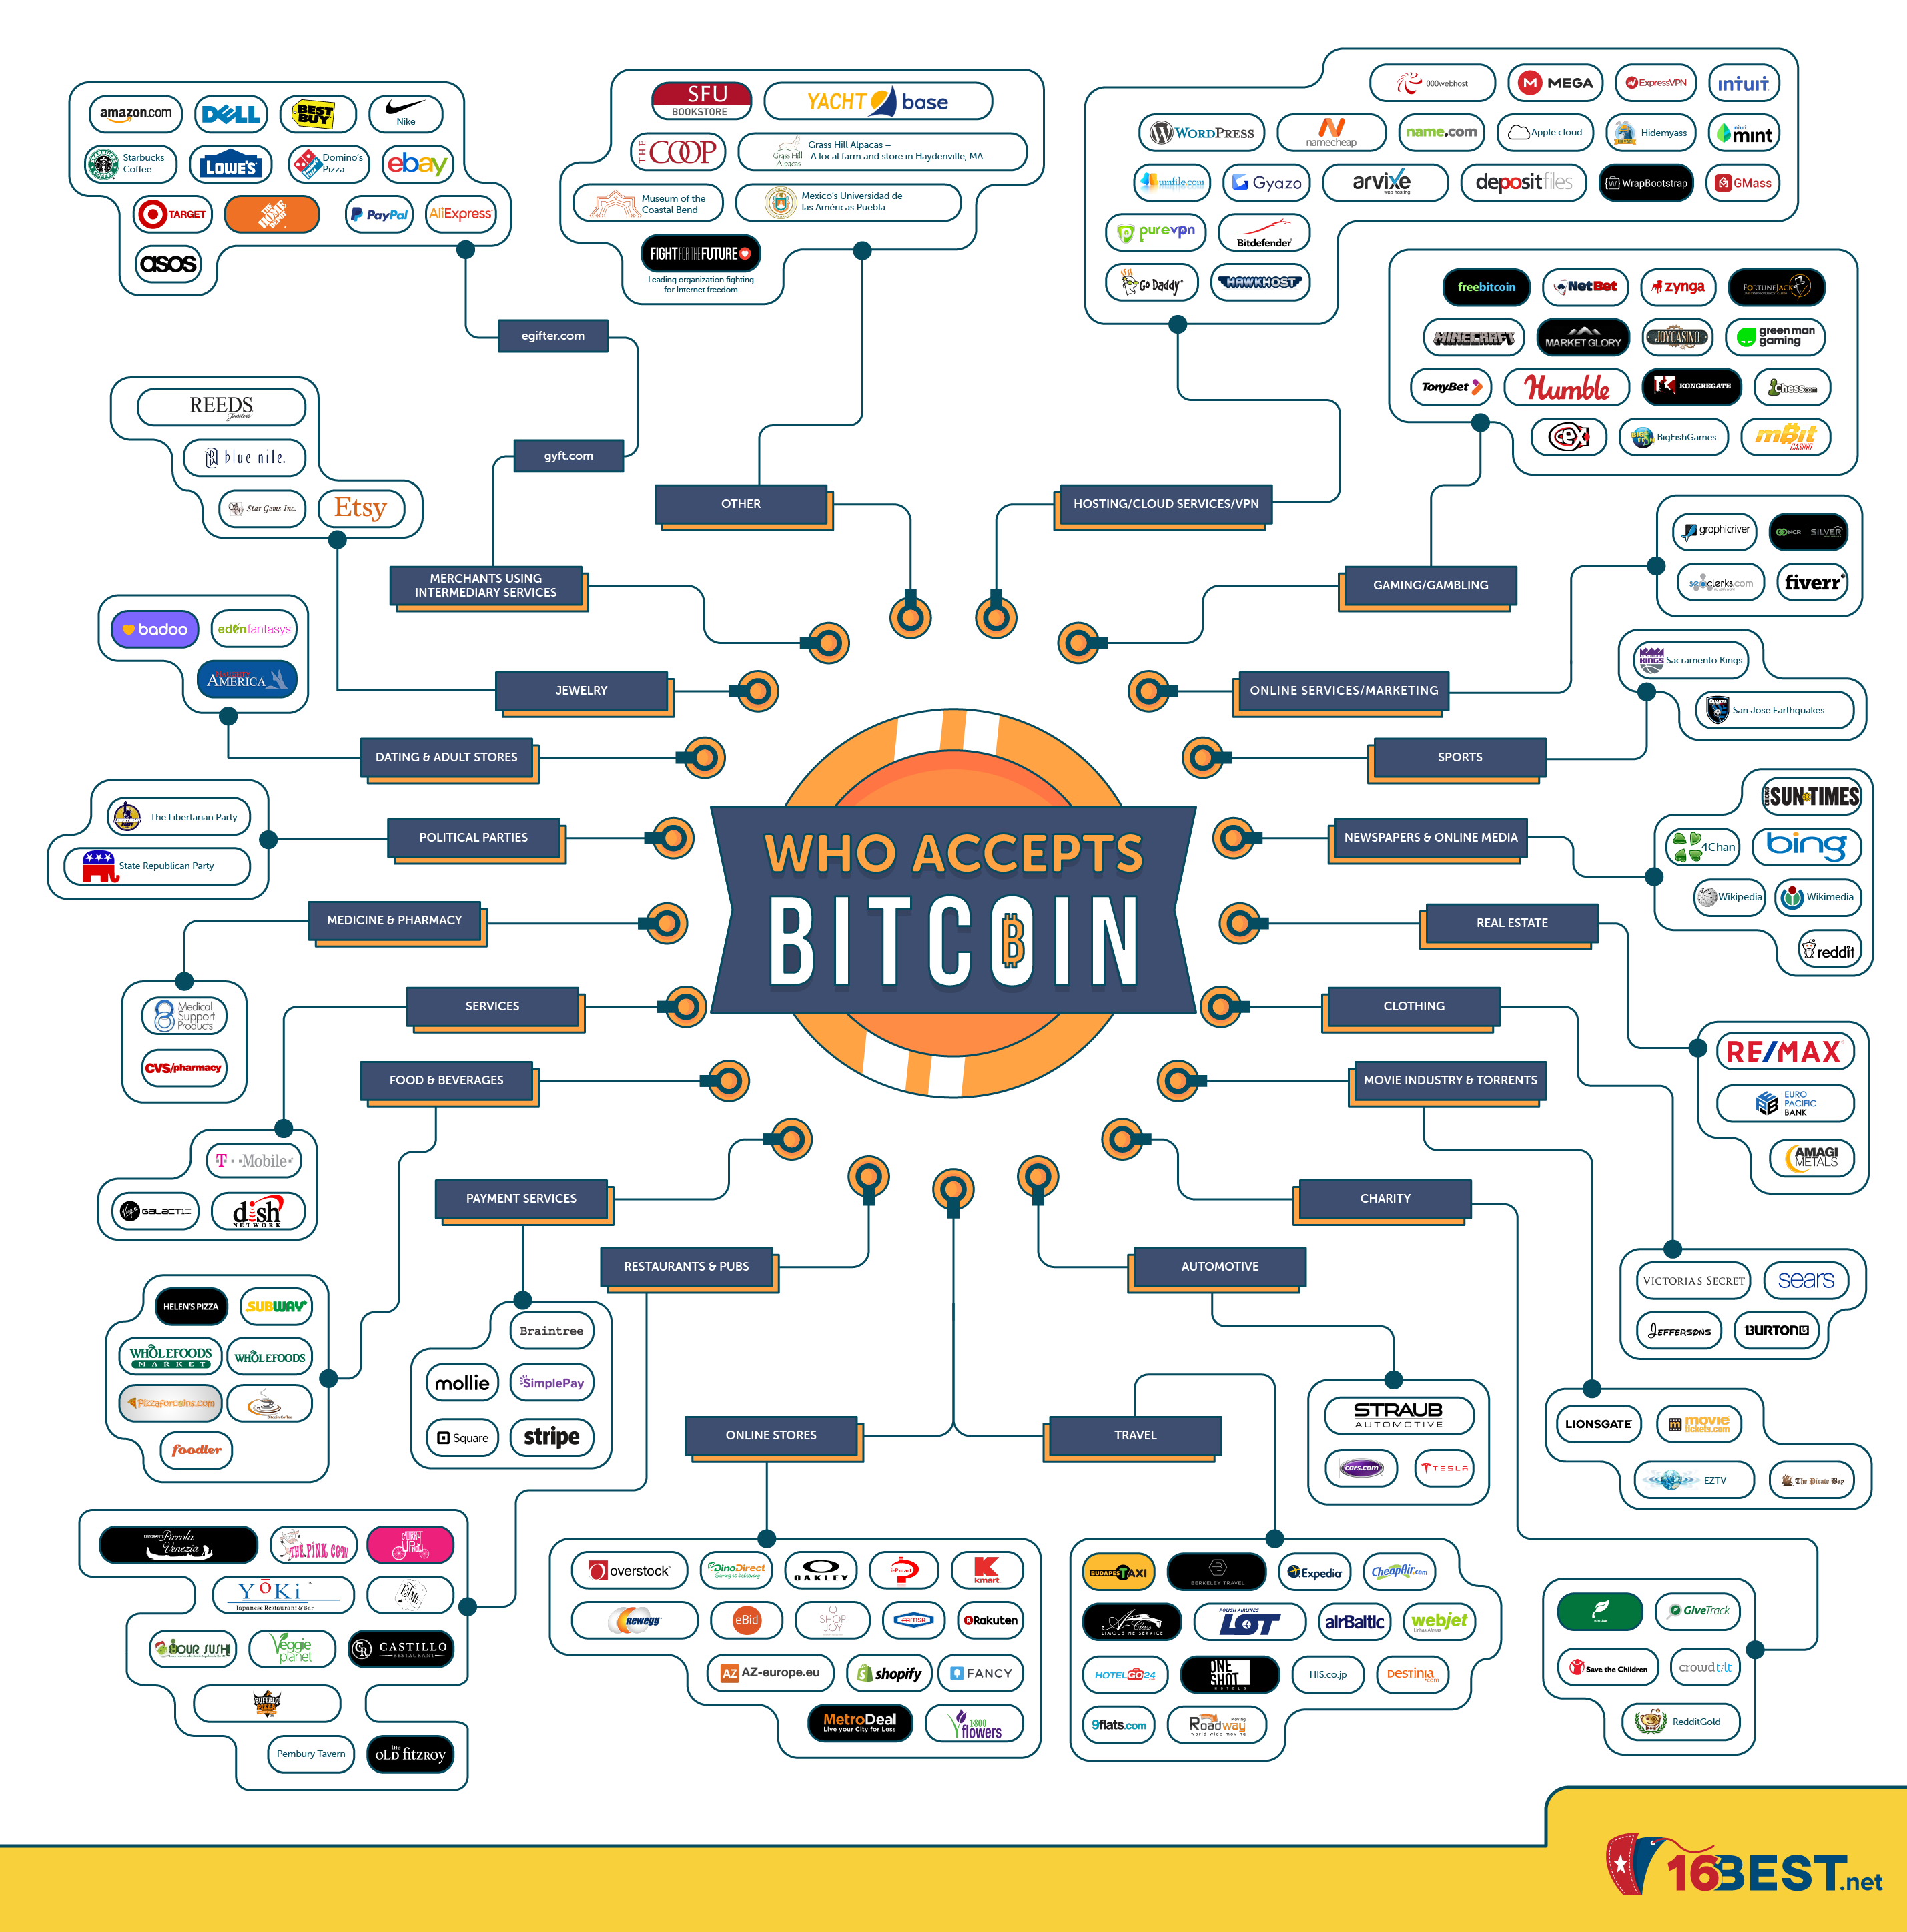 Who Accepts Bitcoin?